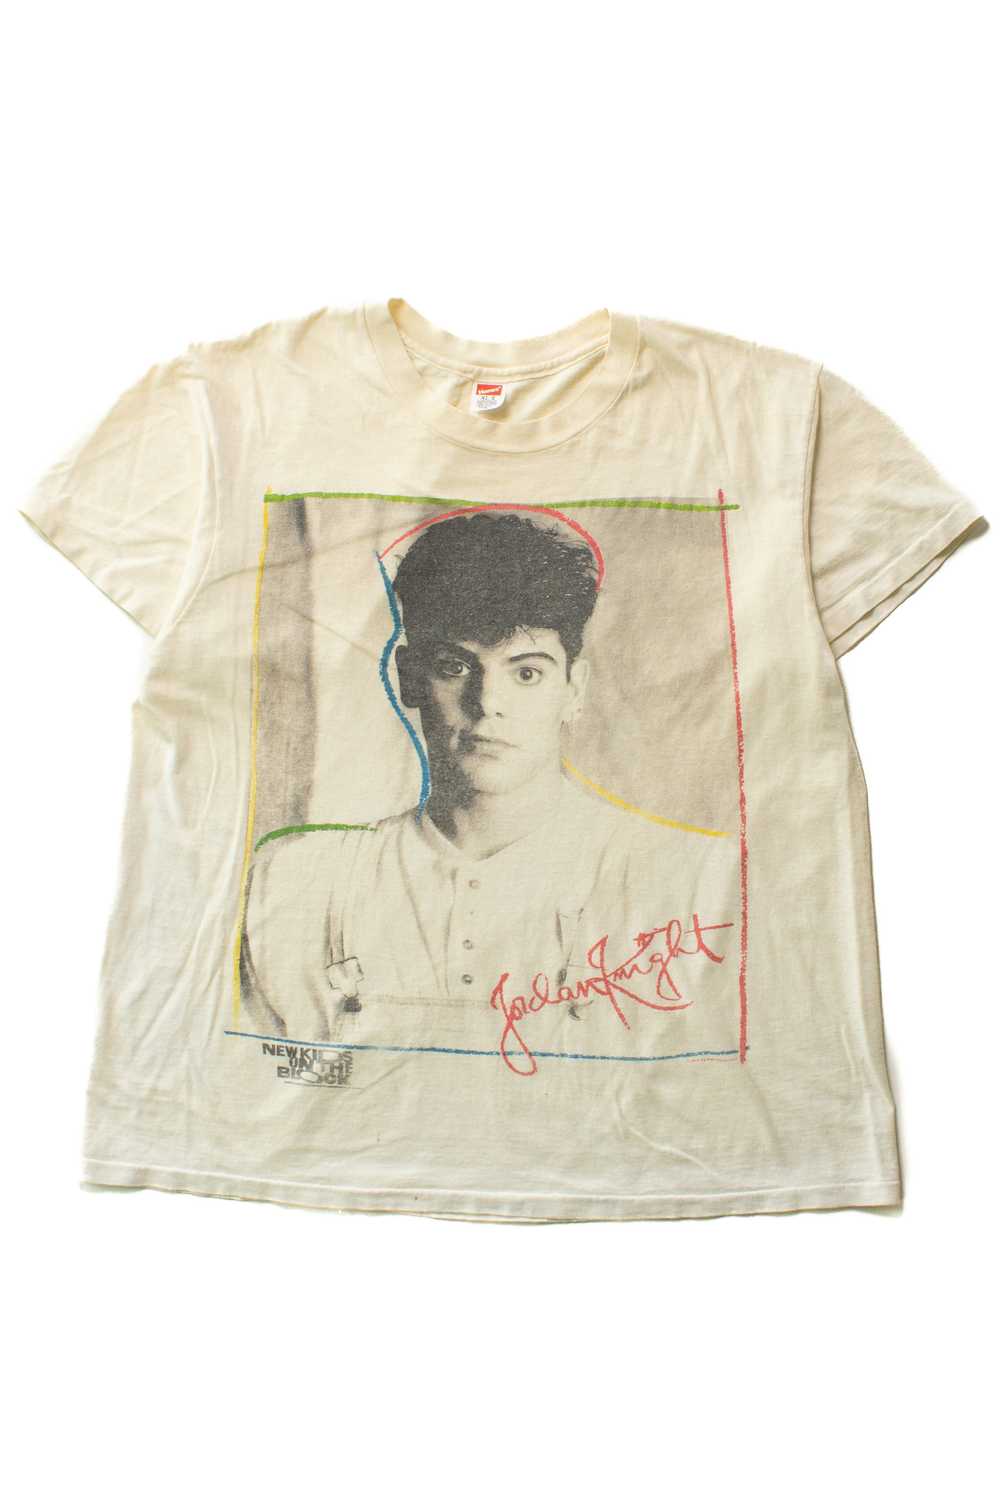 Vintage NKOTB Jordan Knight T-Shirt (1989) - image 1